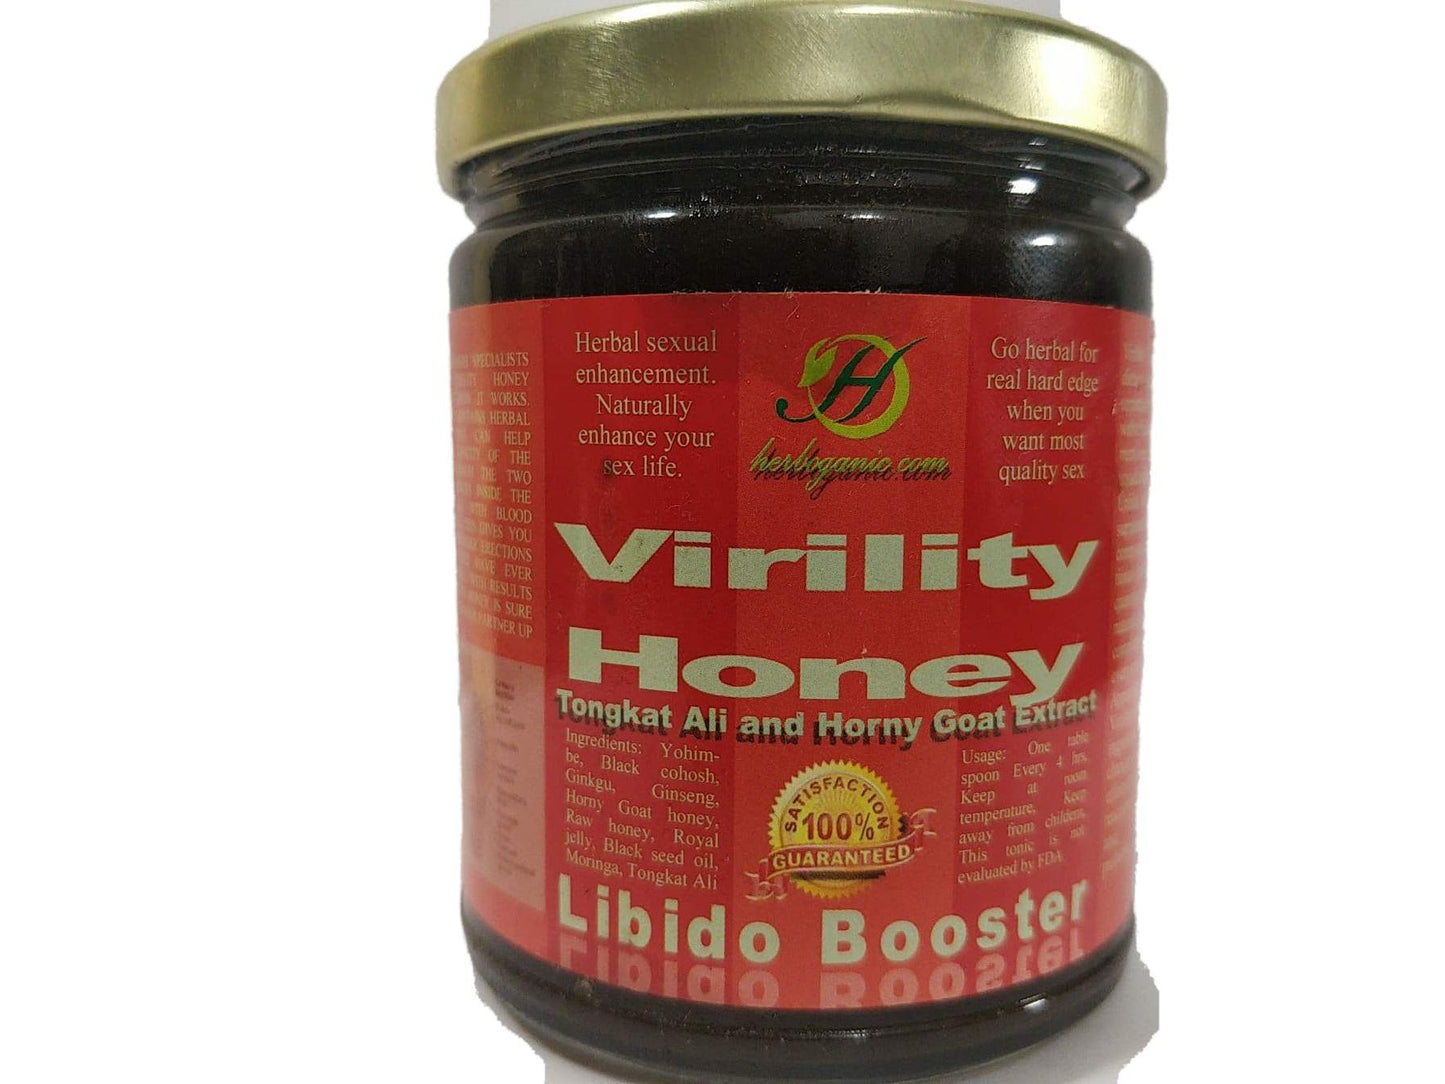 #1 Virility honey